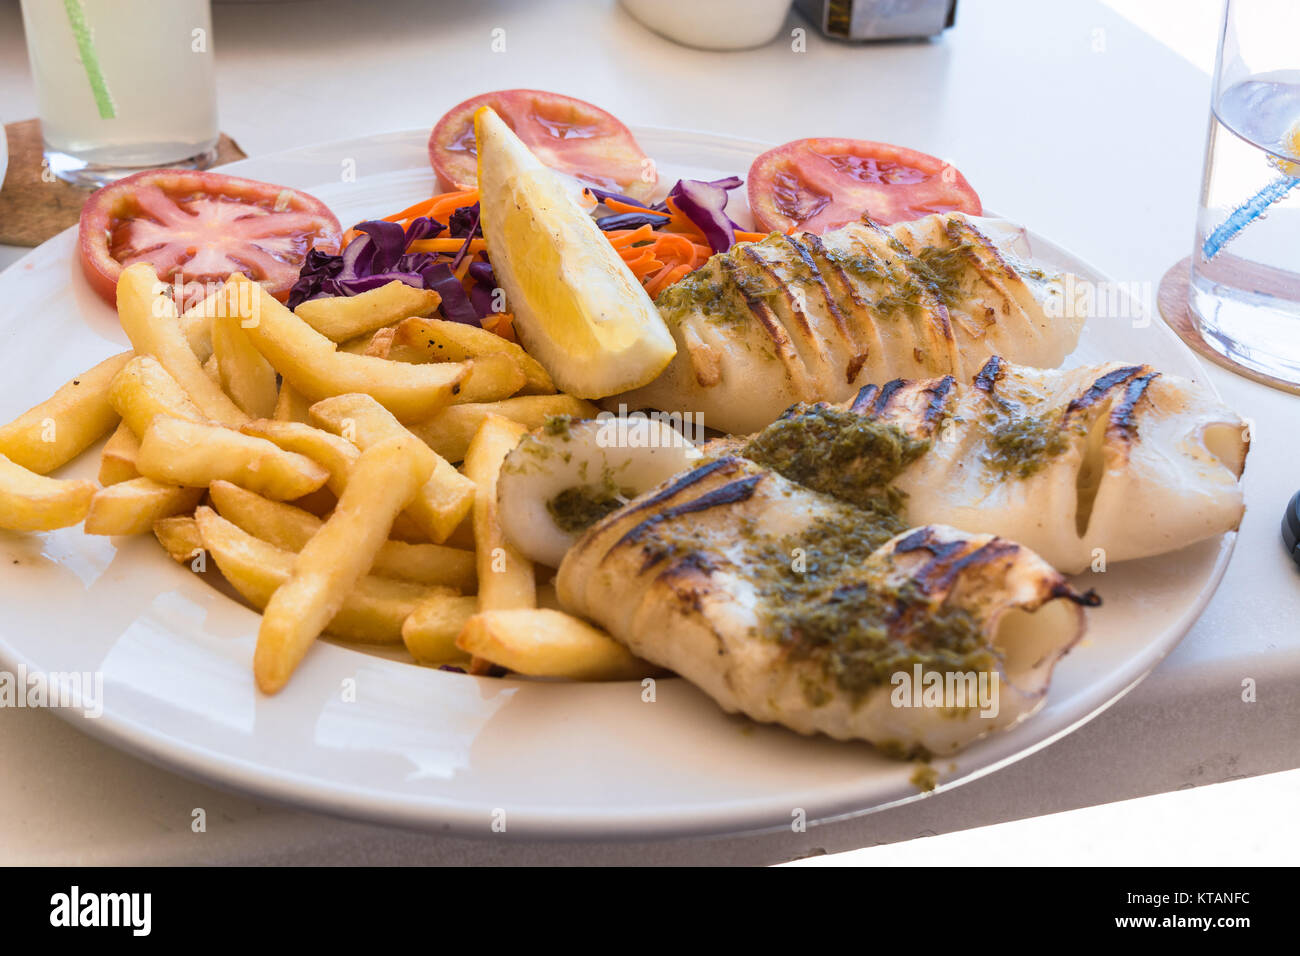 Gegrillten Oktopus. Gegrillter Tintenfisch serviert mit Pommes frittes und Zitronen und Salat. Stock Photo